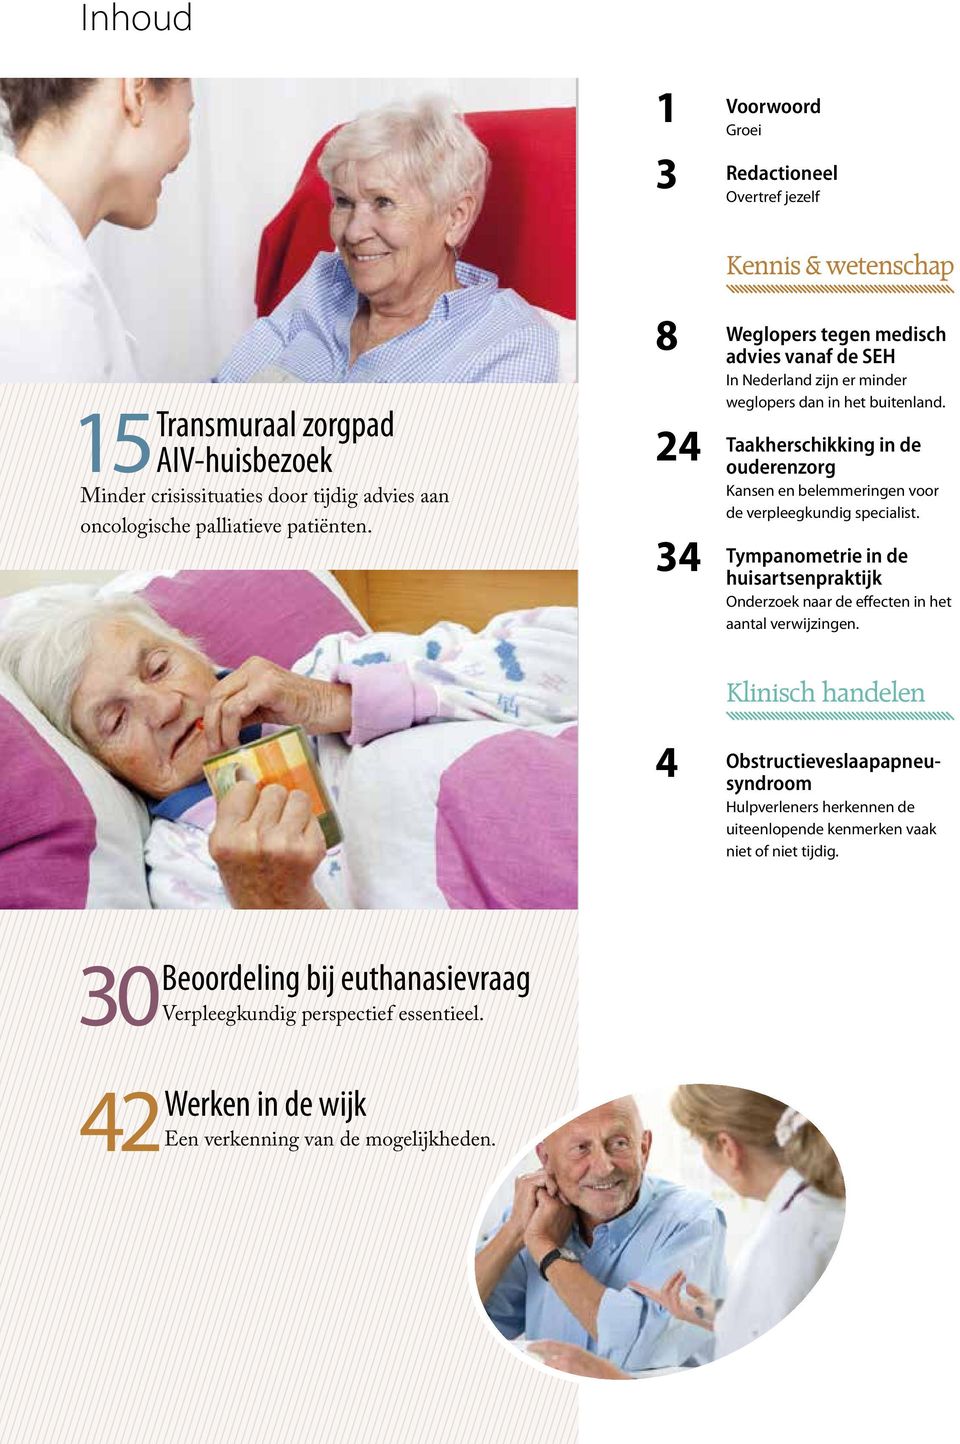 24 34 Taakherschikking in de ouderenzorg Kansen en belemmeringen voor de verpleegkundig specialist. Tympanometrie in de huisartsenpraktijk Onderzoek naar de effecten in het aantal verwijzingen.